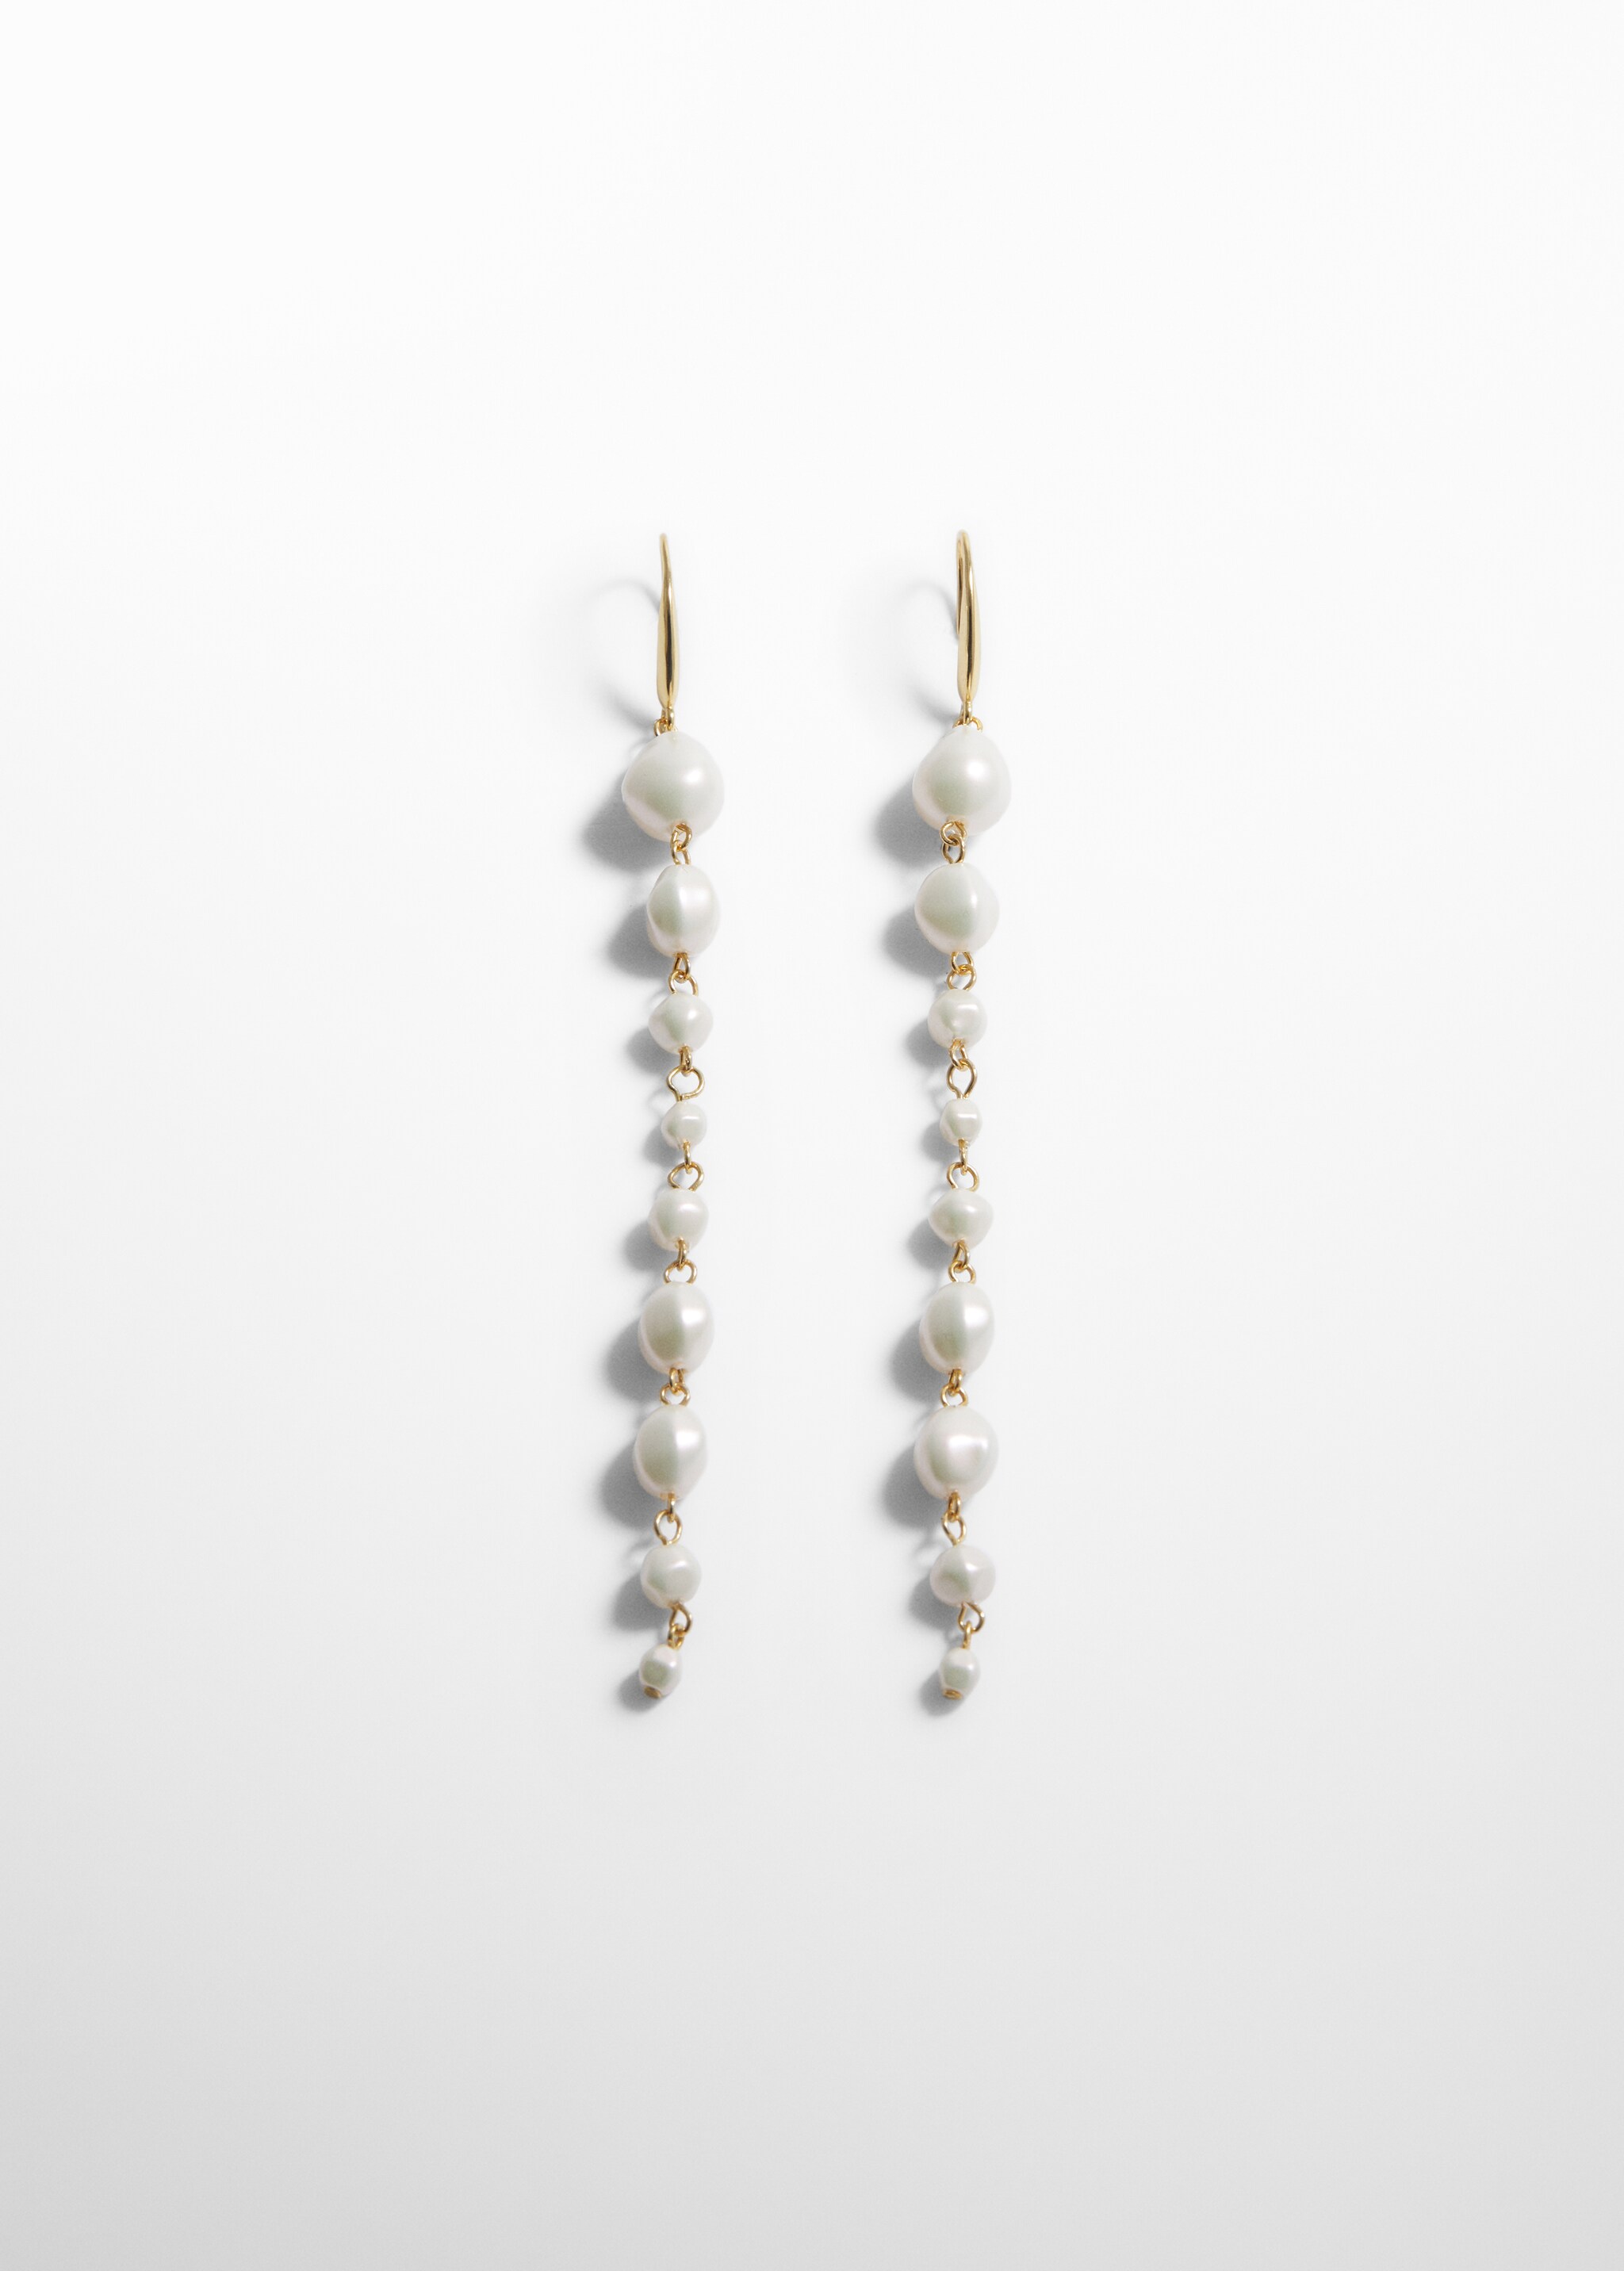 Orecchini filo perle - Articolo senza modello